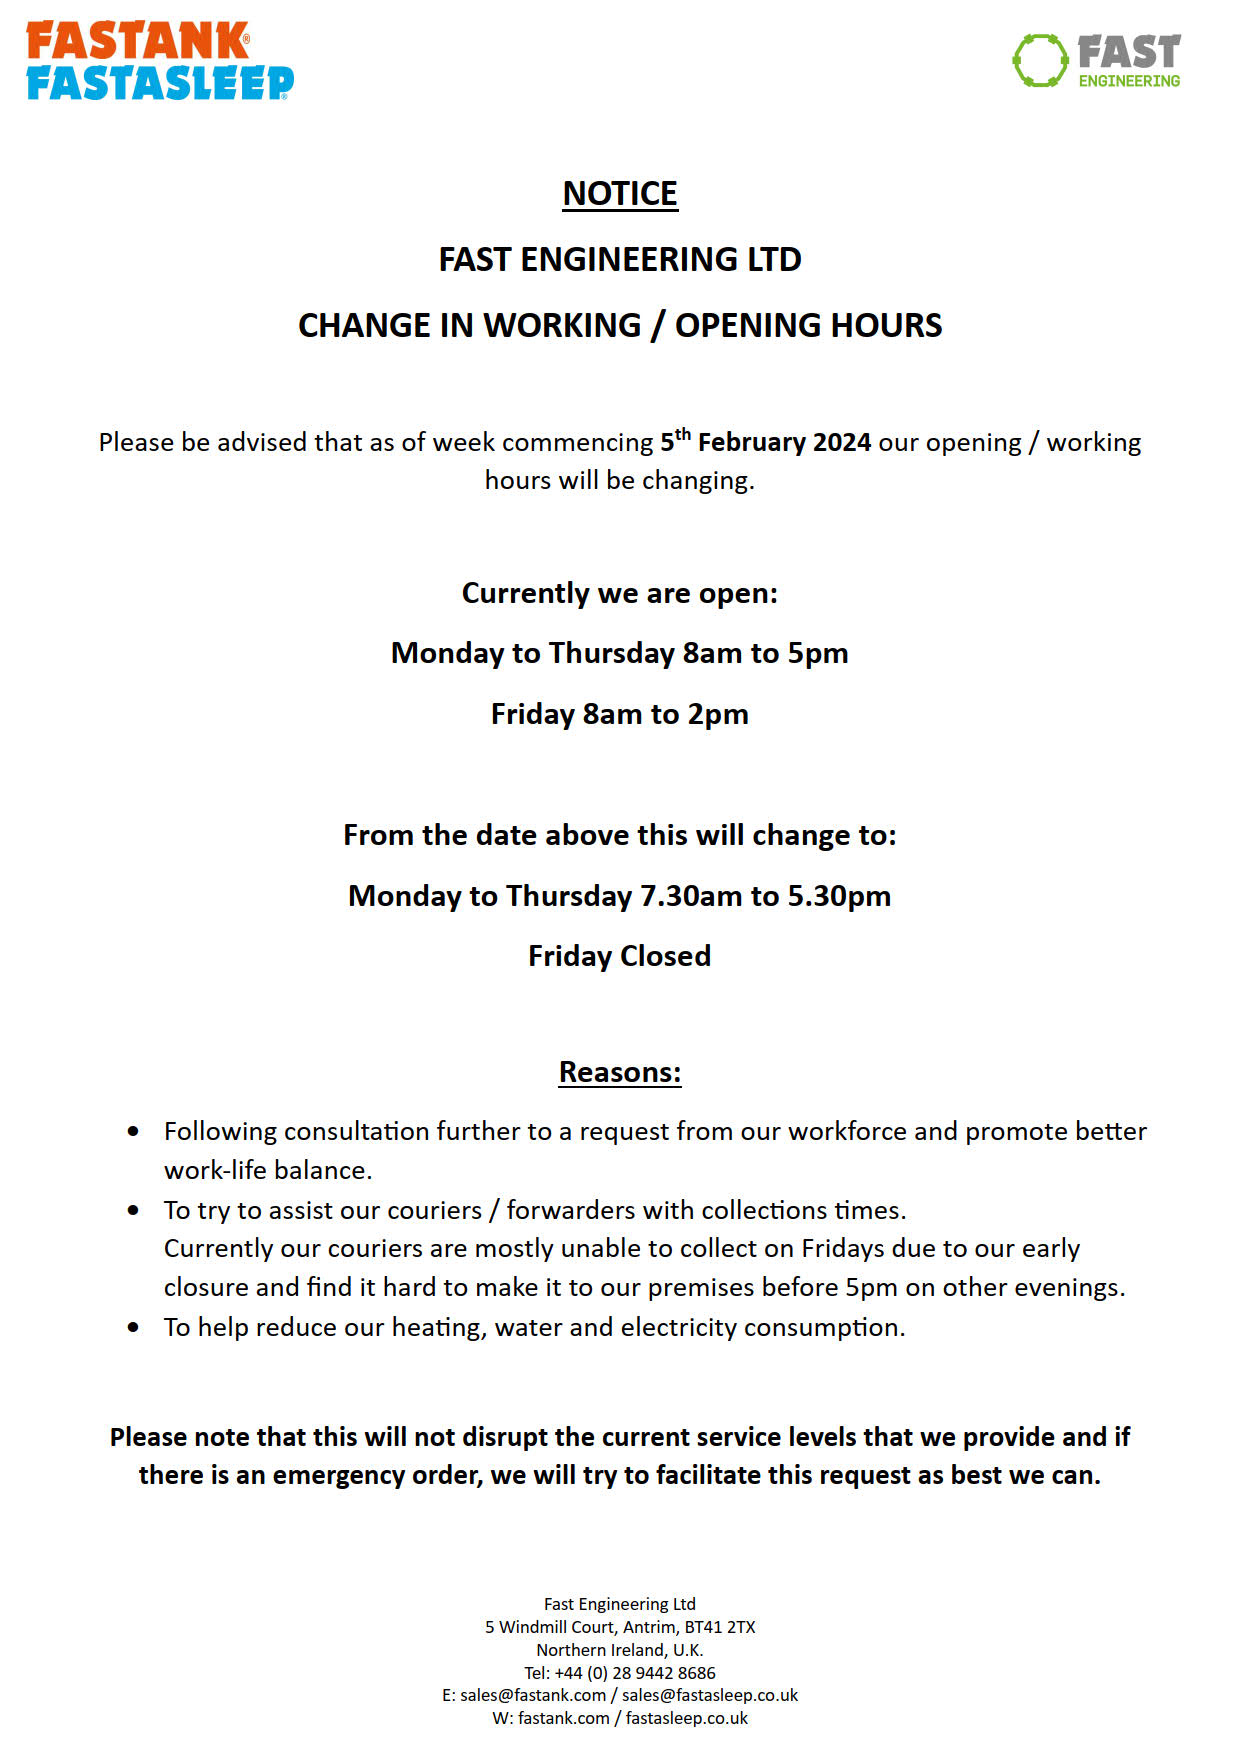 FEL Notice Change in Working Hours2